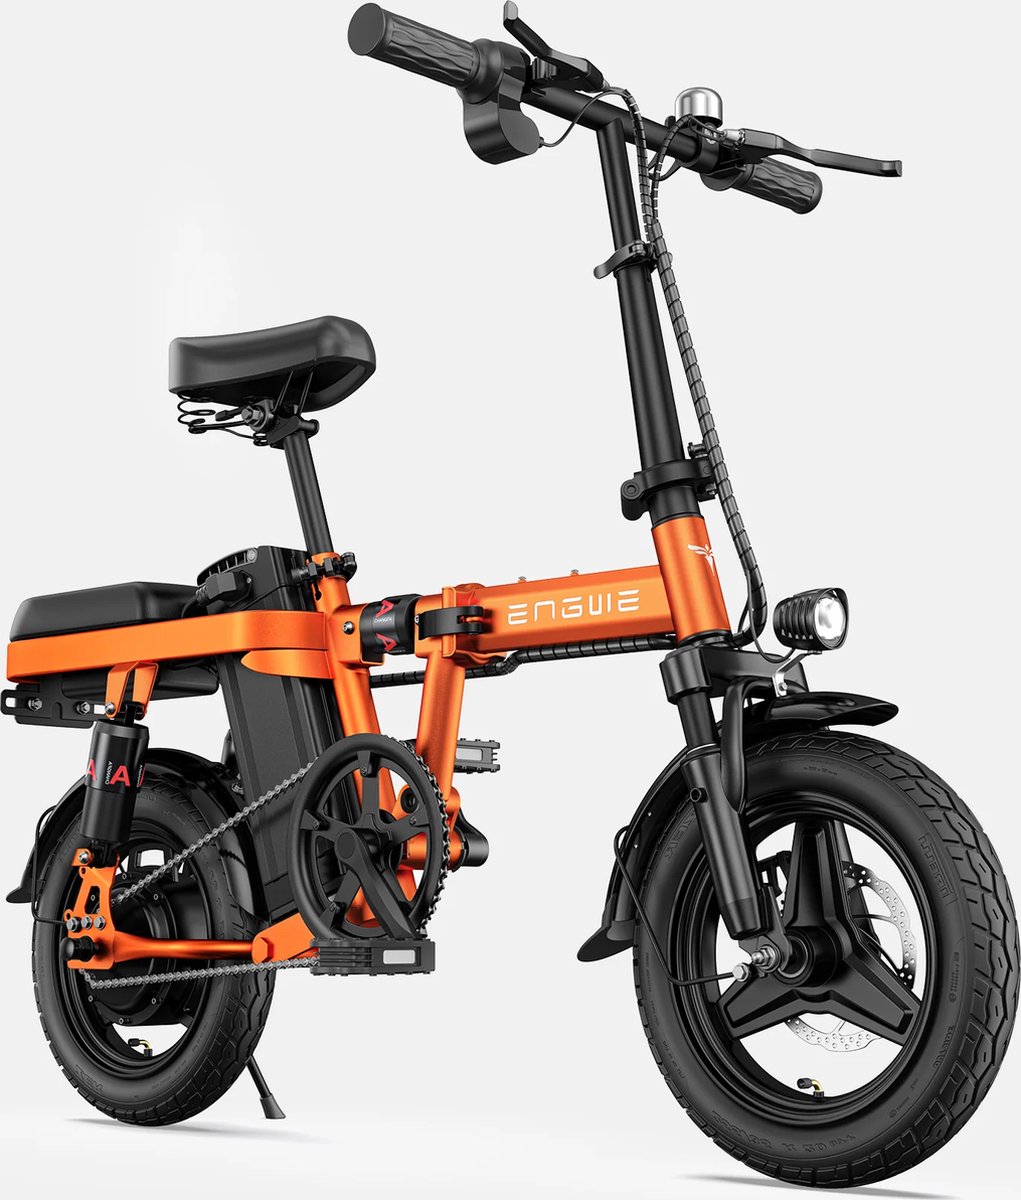 T14 vouwbaar Fatbike E-bike 250 Watt motorvermogen topsnelheid 25 km/u Fat tire 14’’ banden kilometerstand 35km elektrische modus Oranje